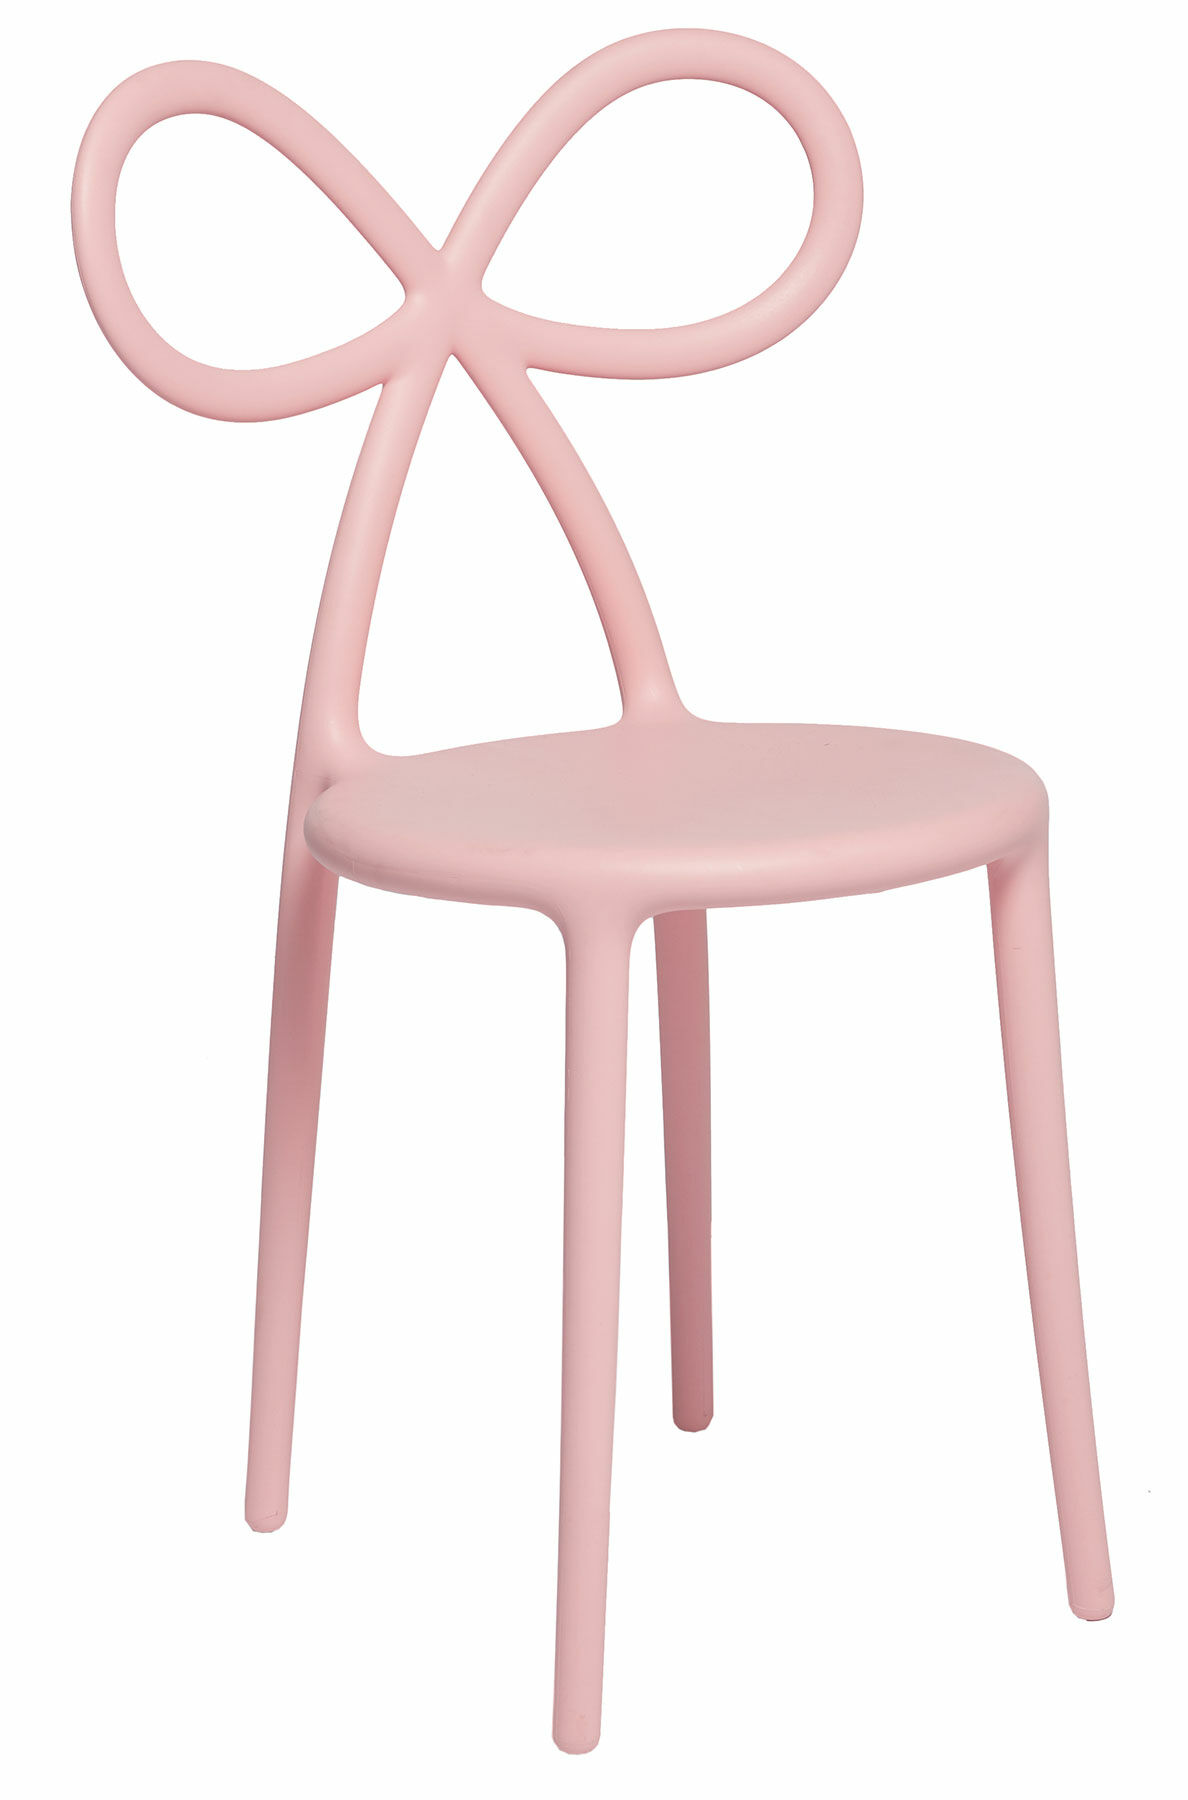 Designer-Stuhl "Ribbon Chair", rosa Version - Design Nika Zupanc von Qeeboo